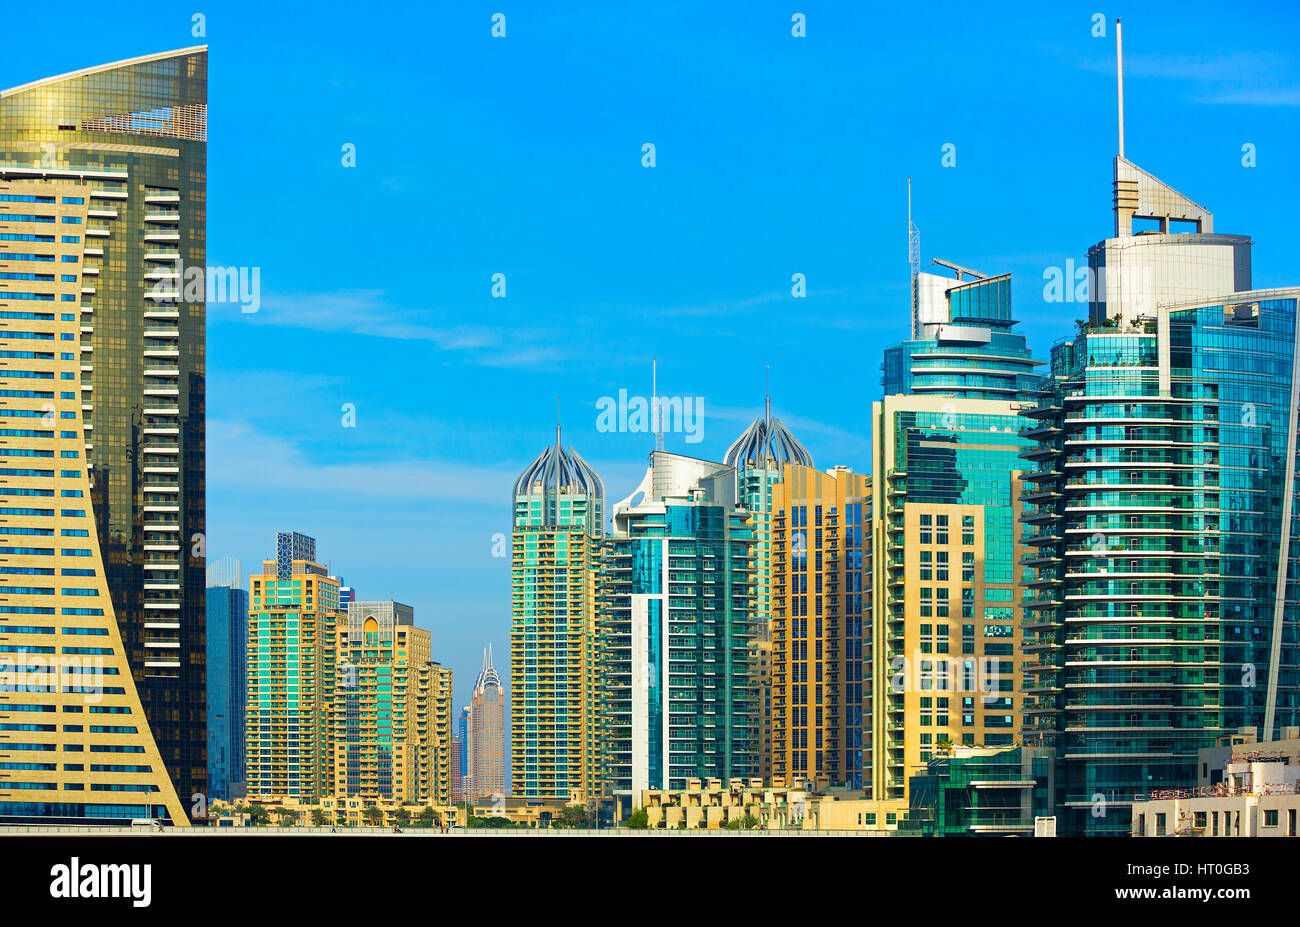 Promenade et gratte-ciel dans le luxe de la Marina de Dubaï, Dubaï, Emirats Arabes Unis Banque D'Images